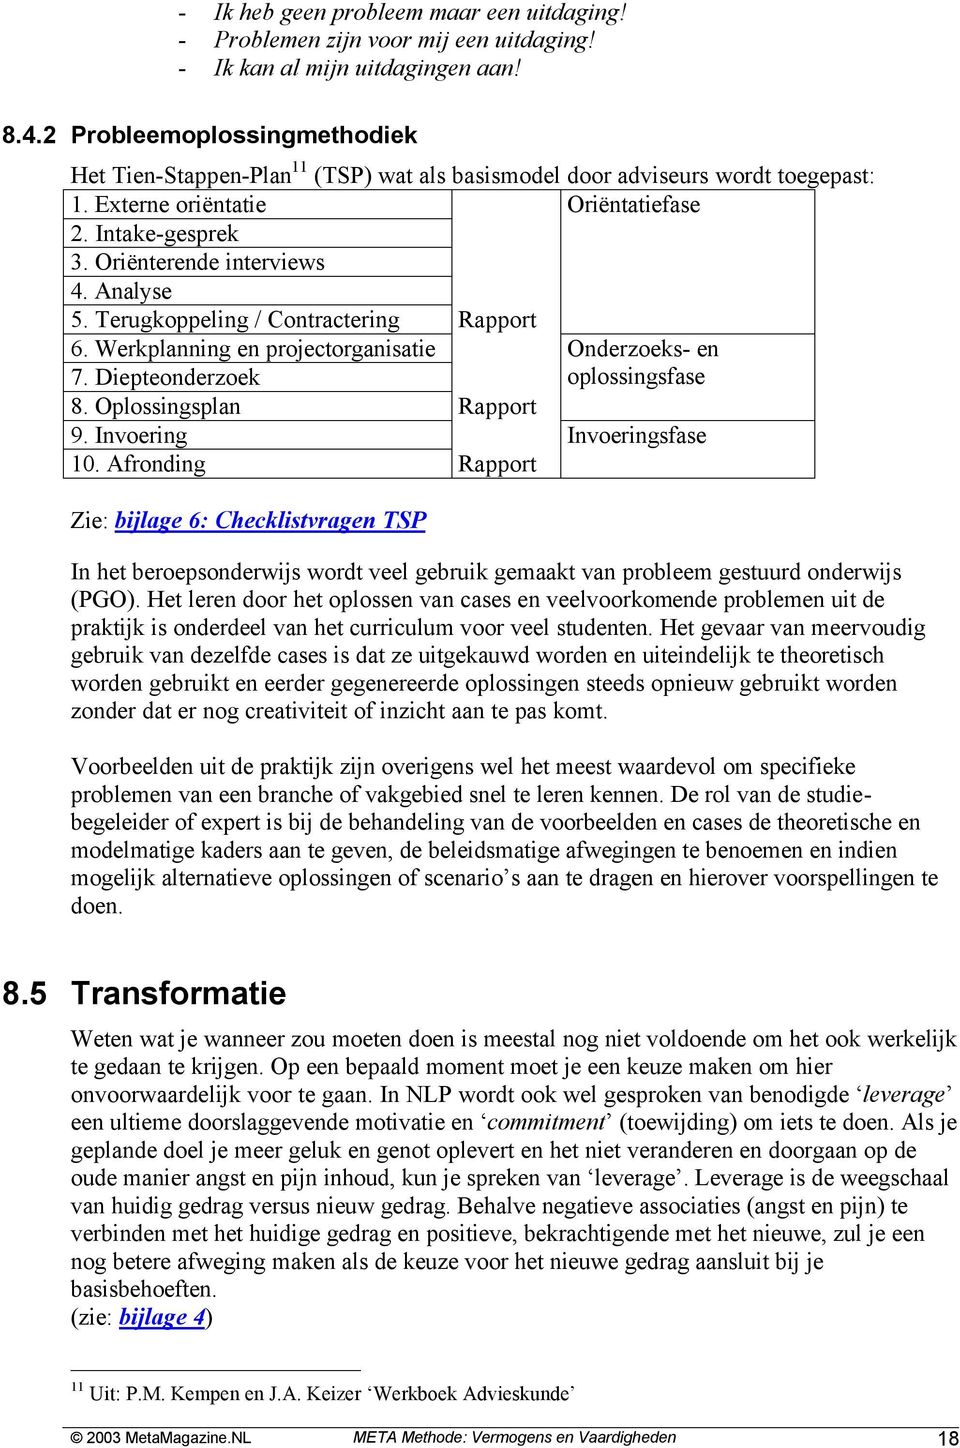 Analyse 5. Terugkoppeling / Contractering Rapport 6. Werkplanning en projectorganisatie Onderzoeks- en 7. Diepteonderzoek oplossingsfase 8. Oplossingsplan Rapport 9. Invoering Invoeringsfase 10.